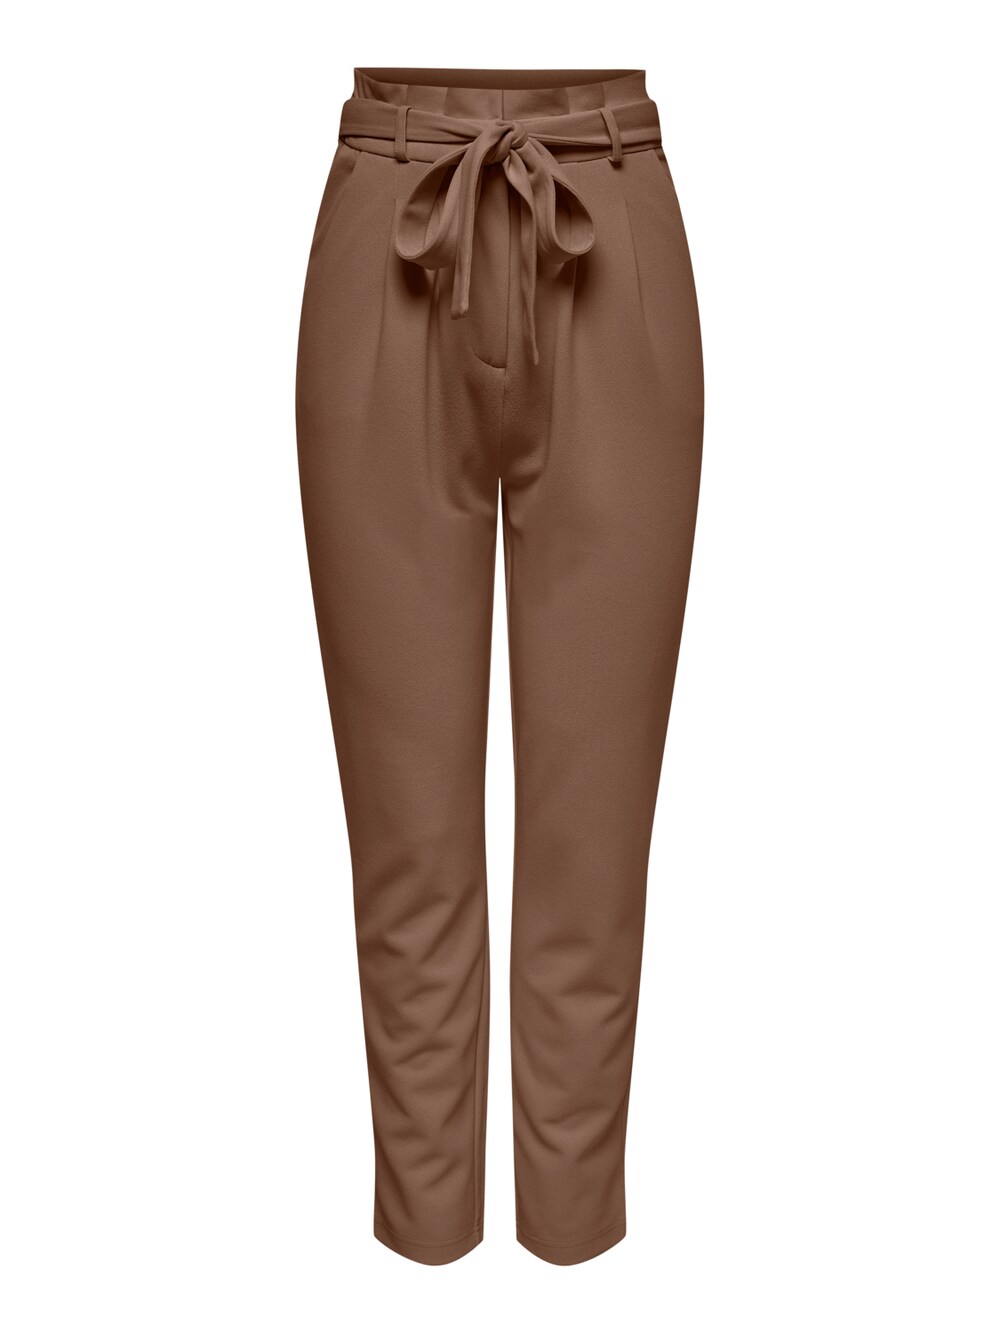 Зауженные брюки со складками спереди JDY Tanja, коричневый